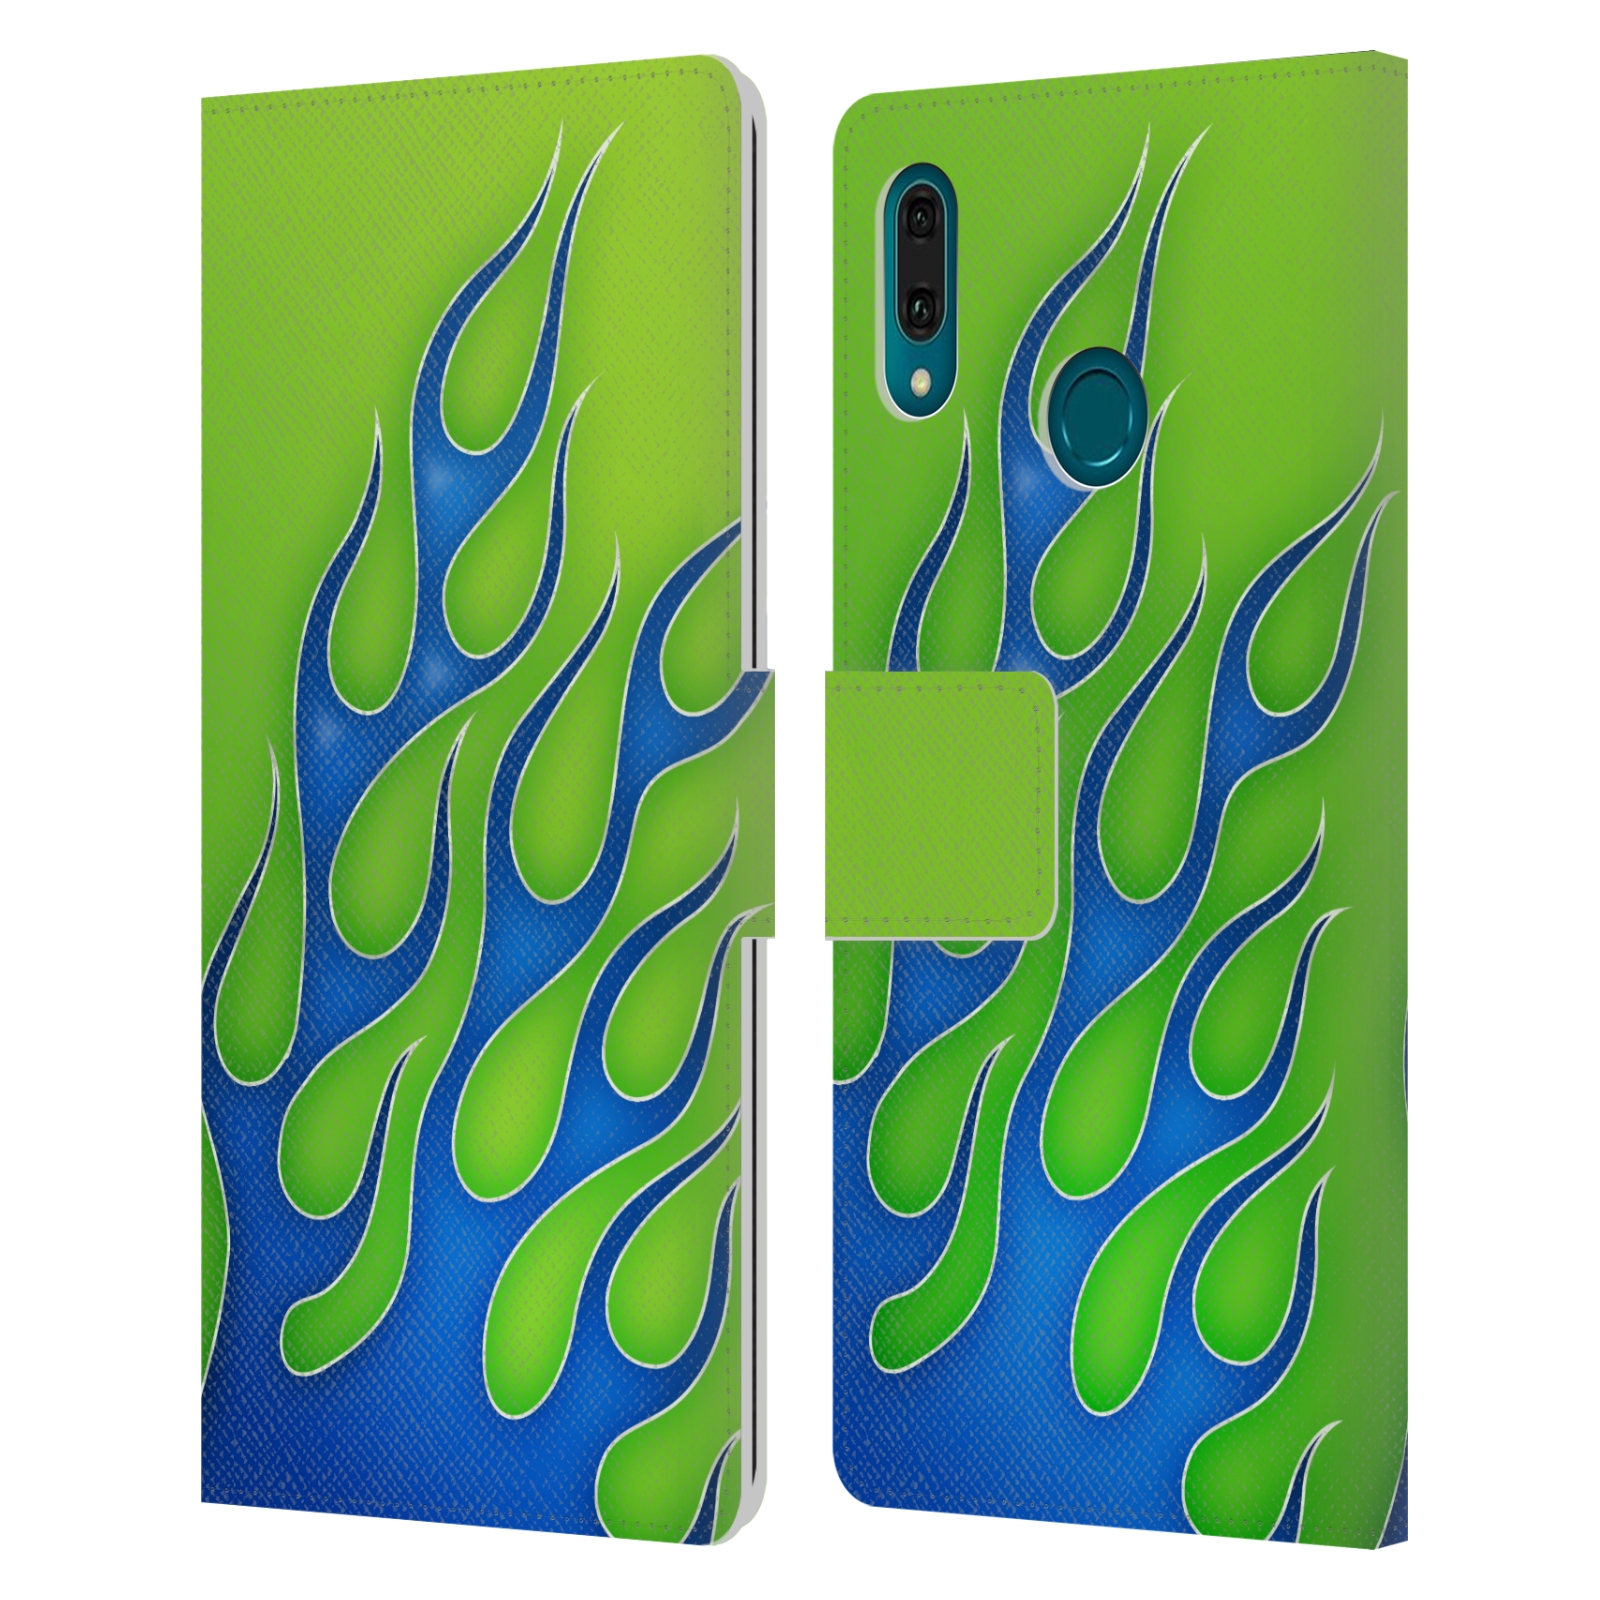 Pouzdro na mobil Huawei Y9 2019 barevné ohnivé plameny modrá a zelená